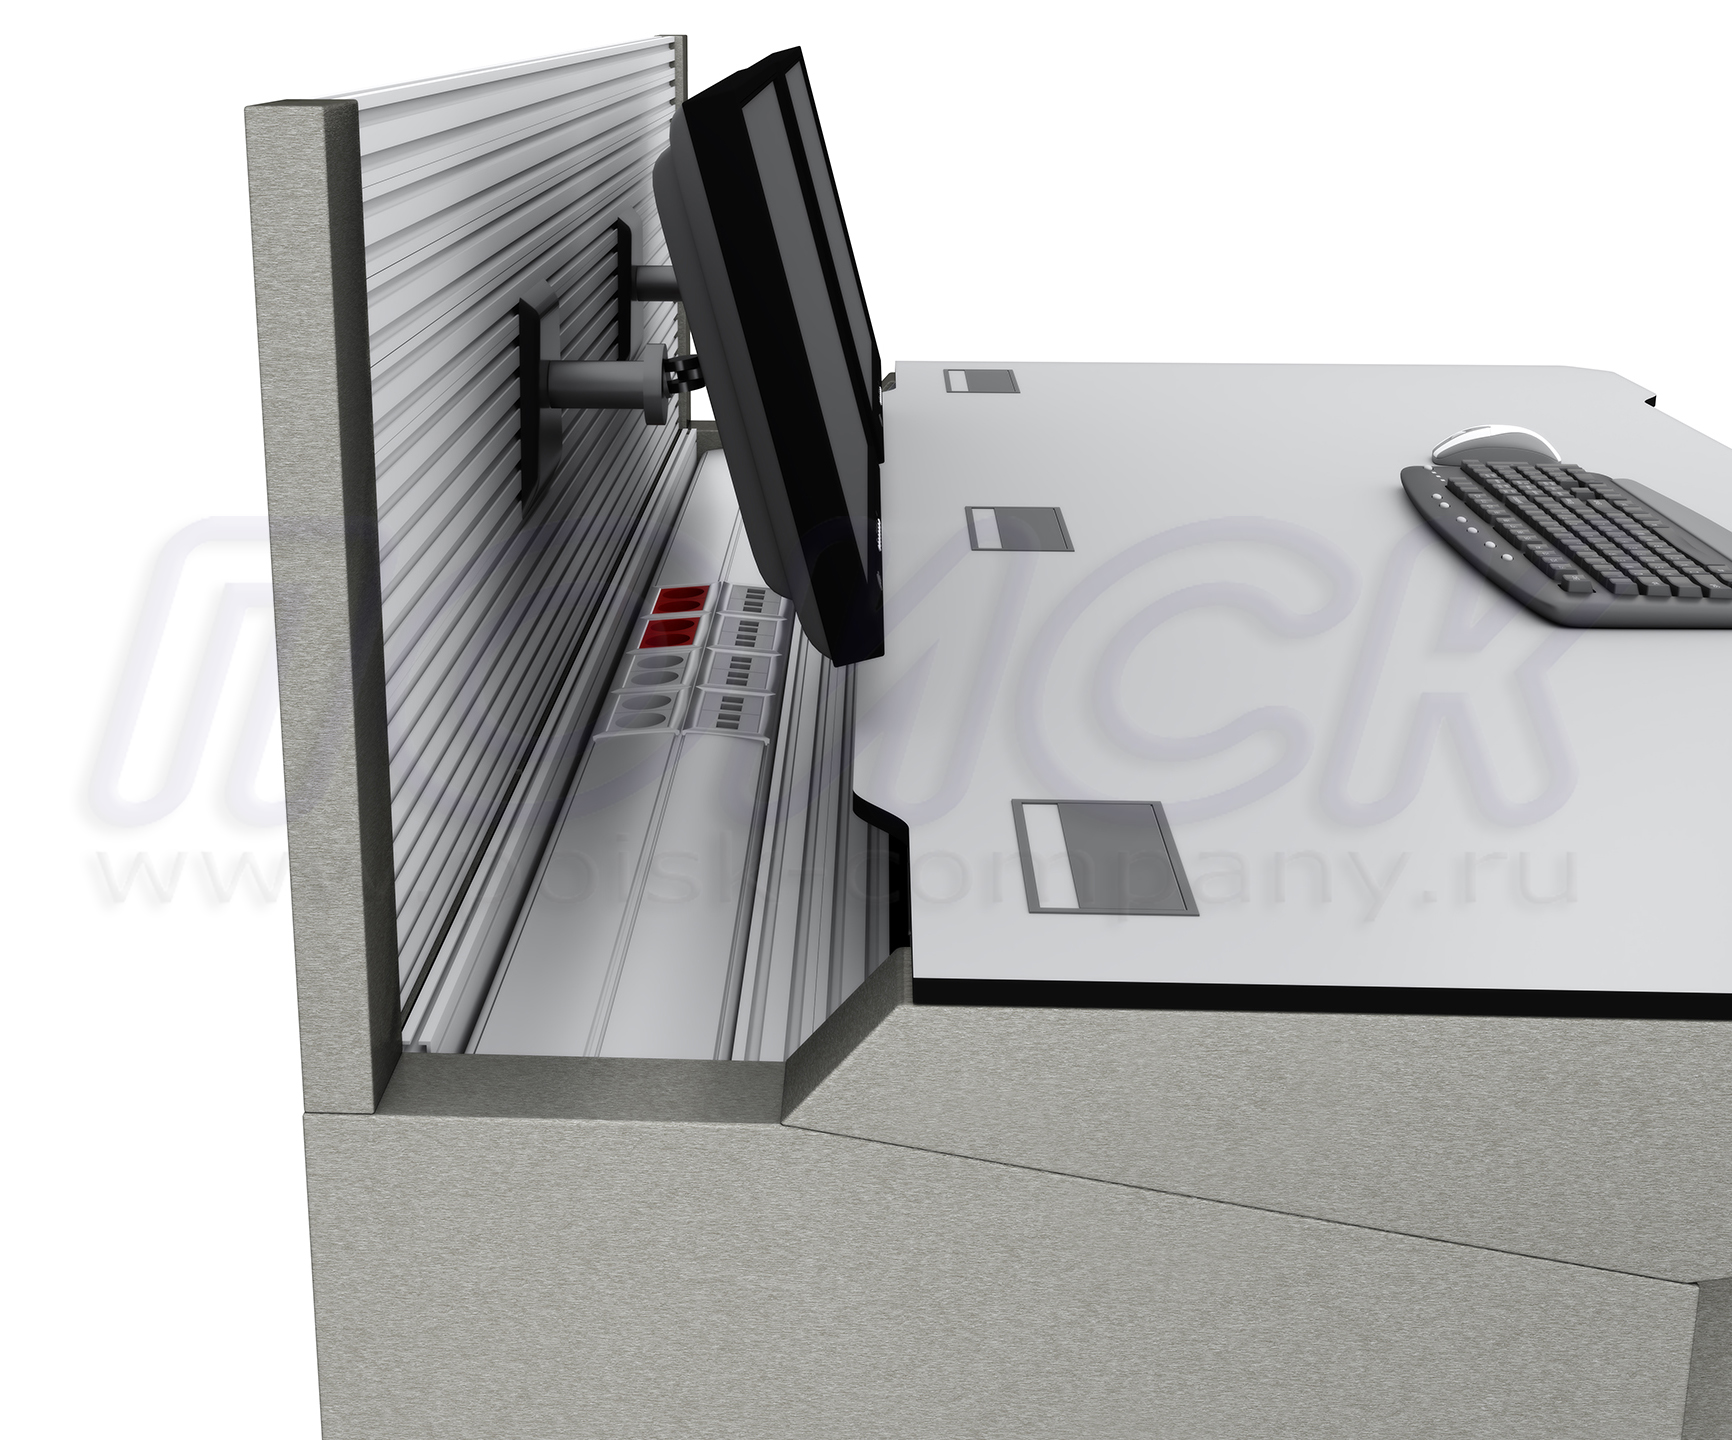 Вертикальная монтажная поверхность типа slatwall на столе серии ПОИСК-H закрепляет различные оборудования и полки для хранения документации